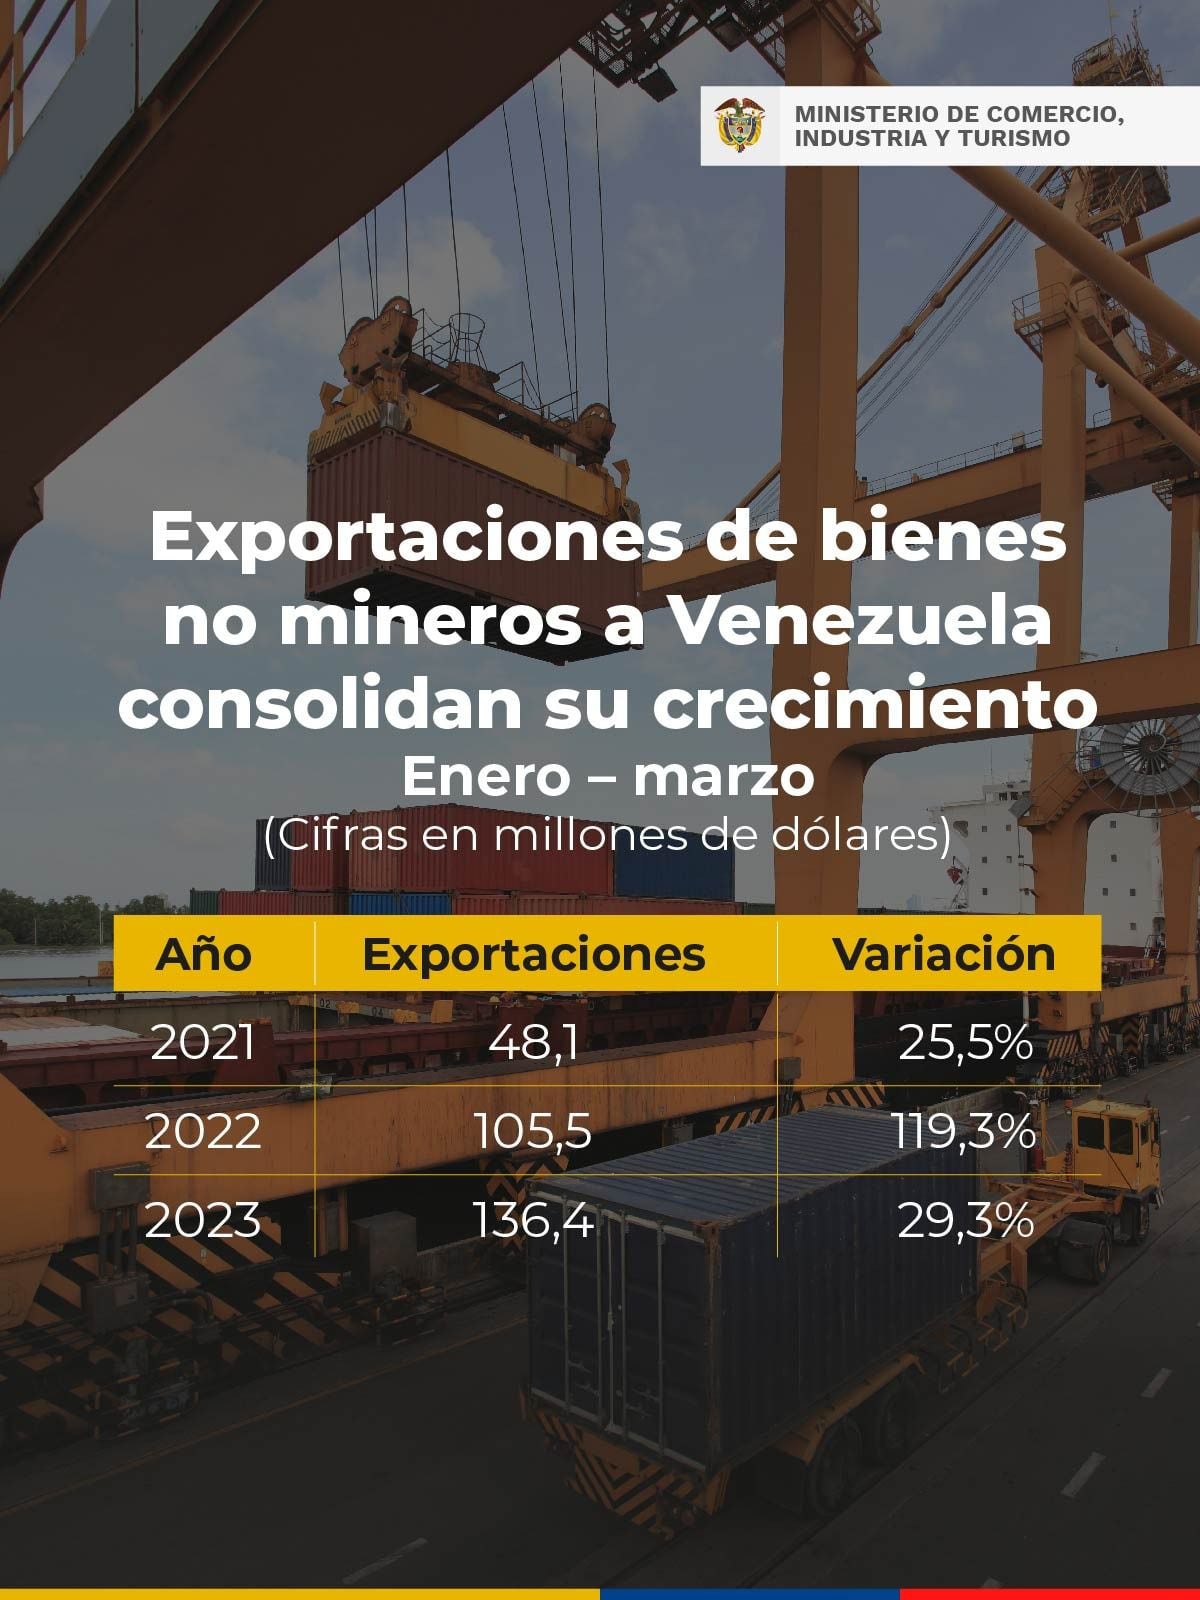 Los bienes no mineros y su exportación a Venezuela vienen creciendo durante los últimos años.